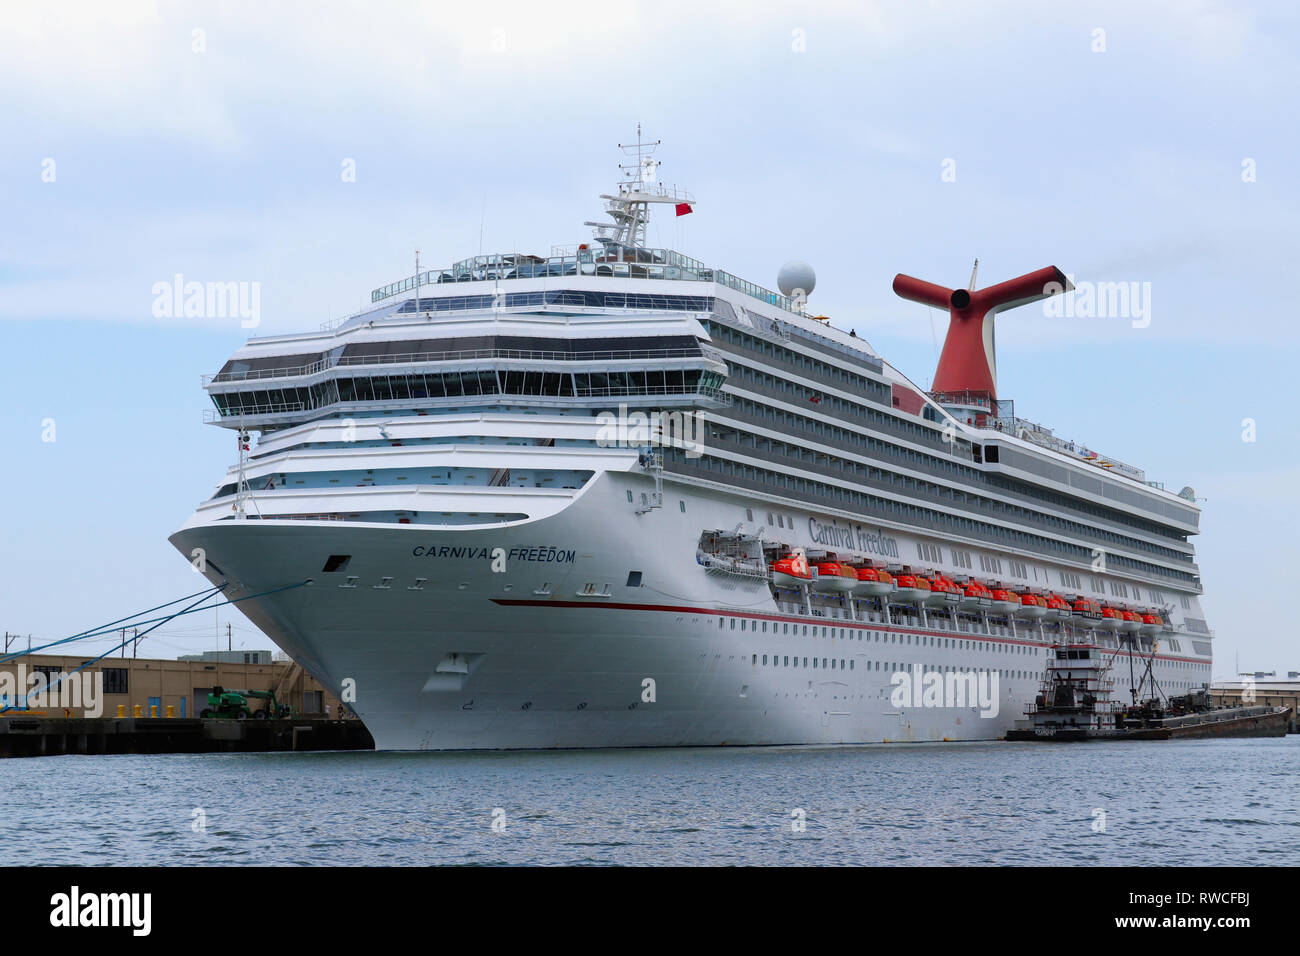 GALVESTON, Texas, USA - Juni 9, 2018: Carnival Freedom Cruise Liner, im Hafen von Galveston, Texas angedockt. Durch die Carnival Cruise Line betrieben. Stockfoto